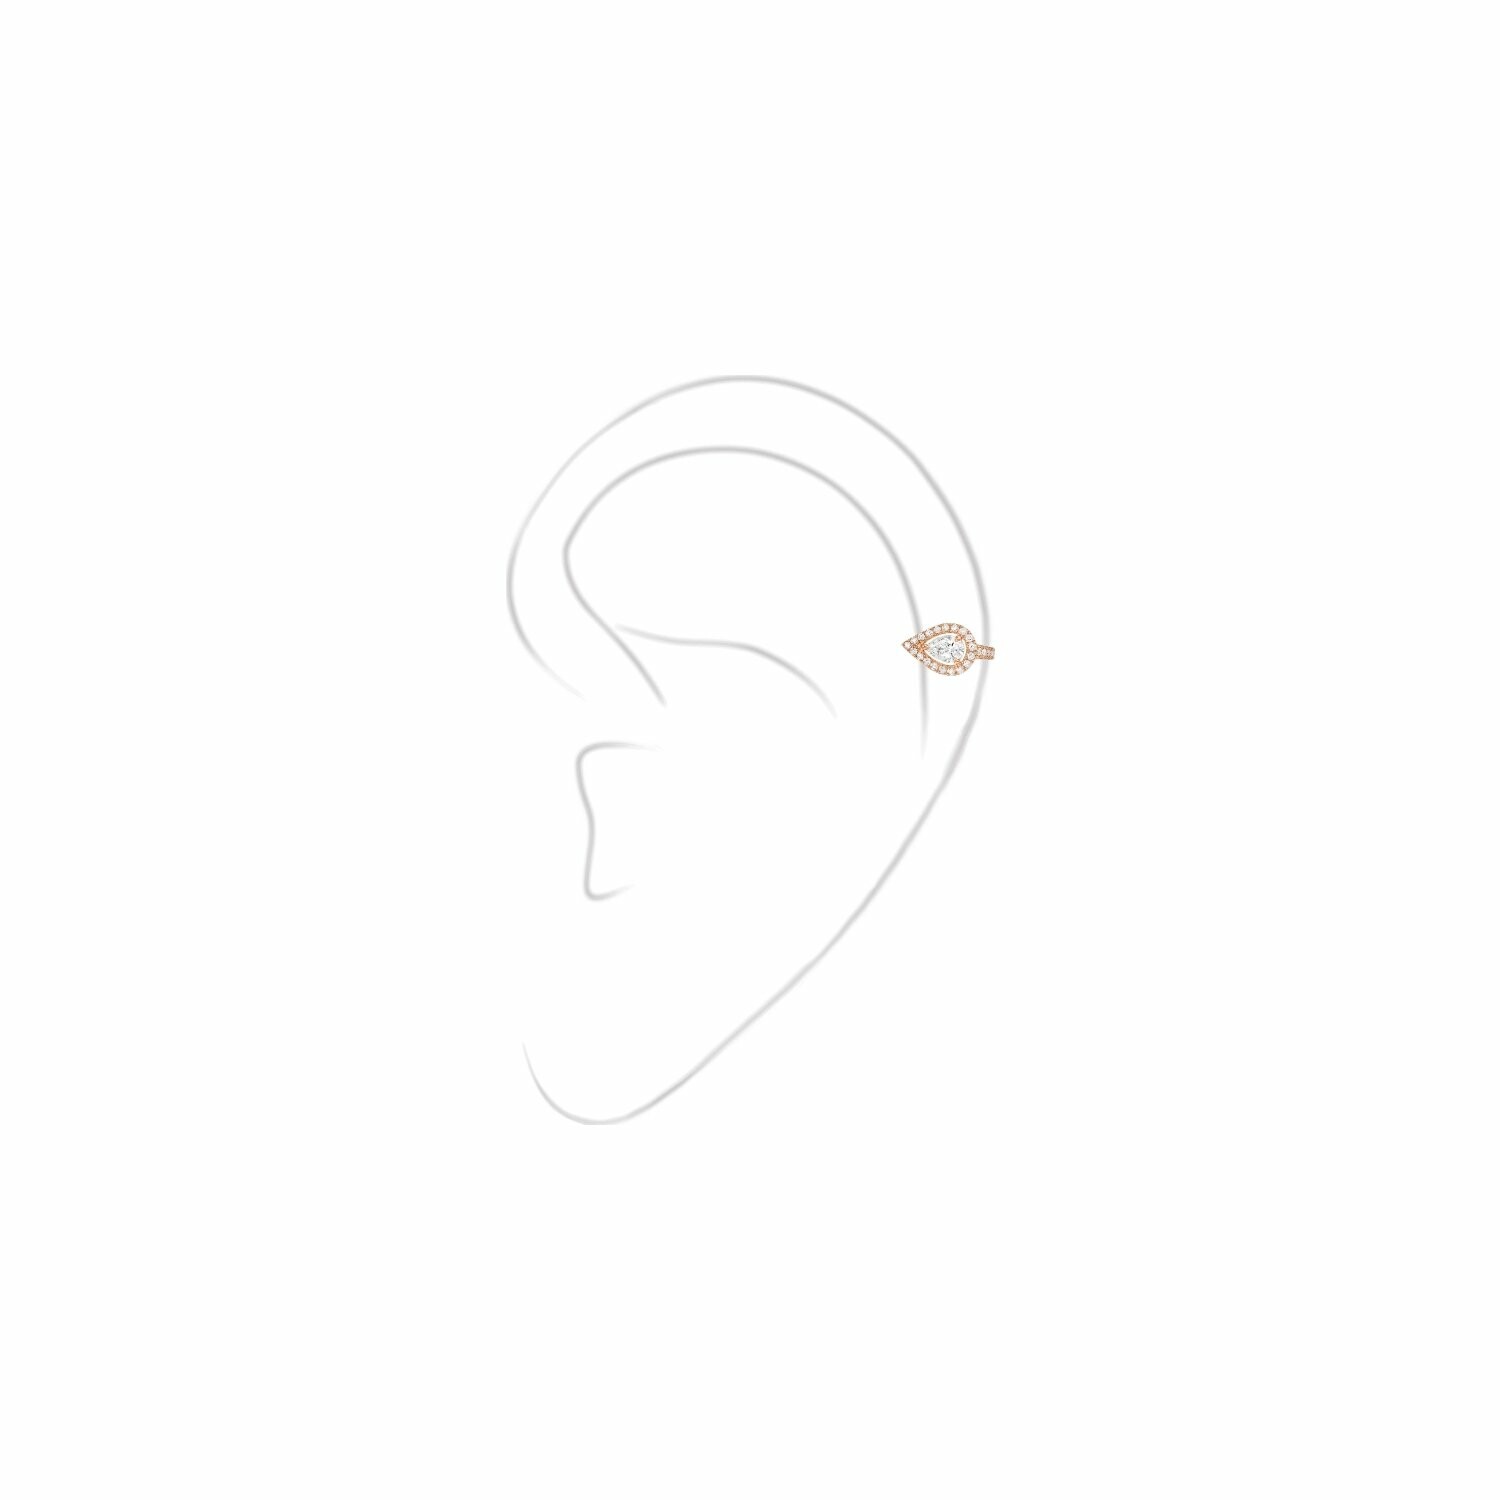 Mono boucle d'oreille clip haut Messika PS en or rose et diamants vue 2